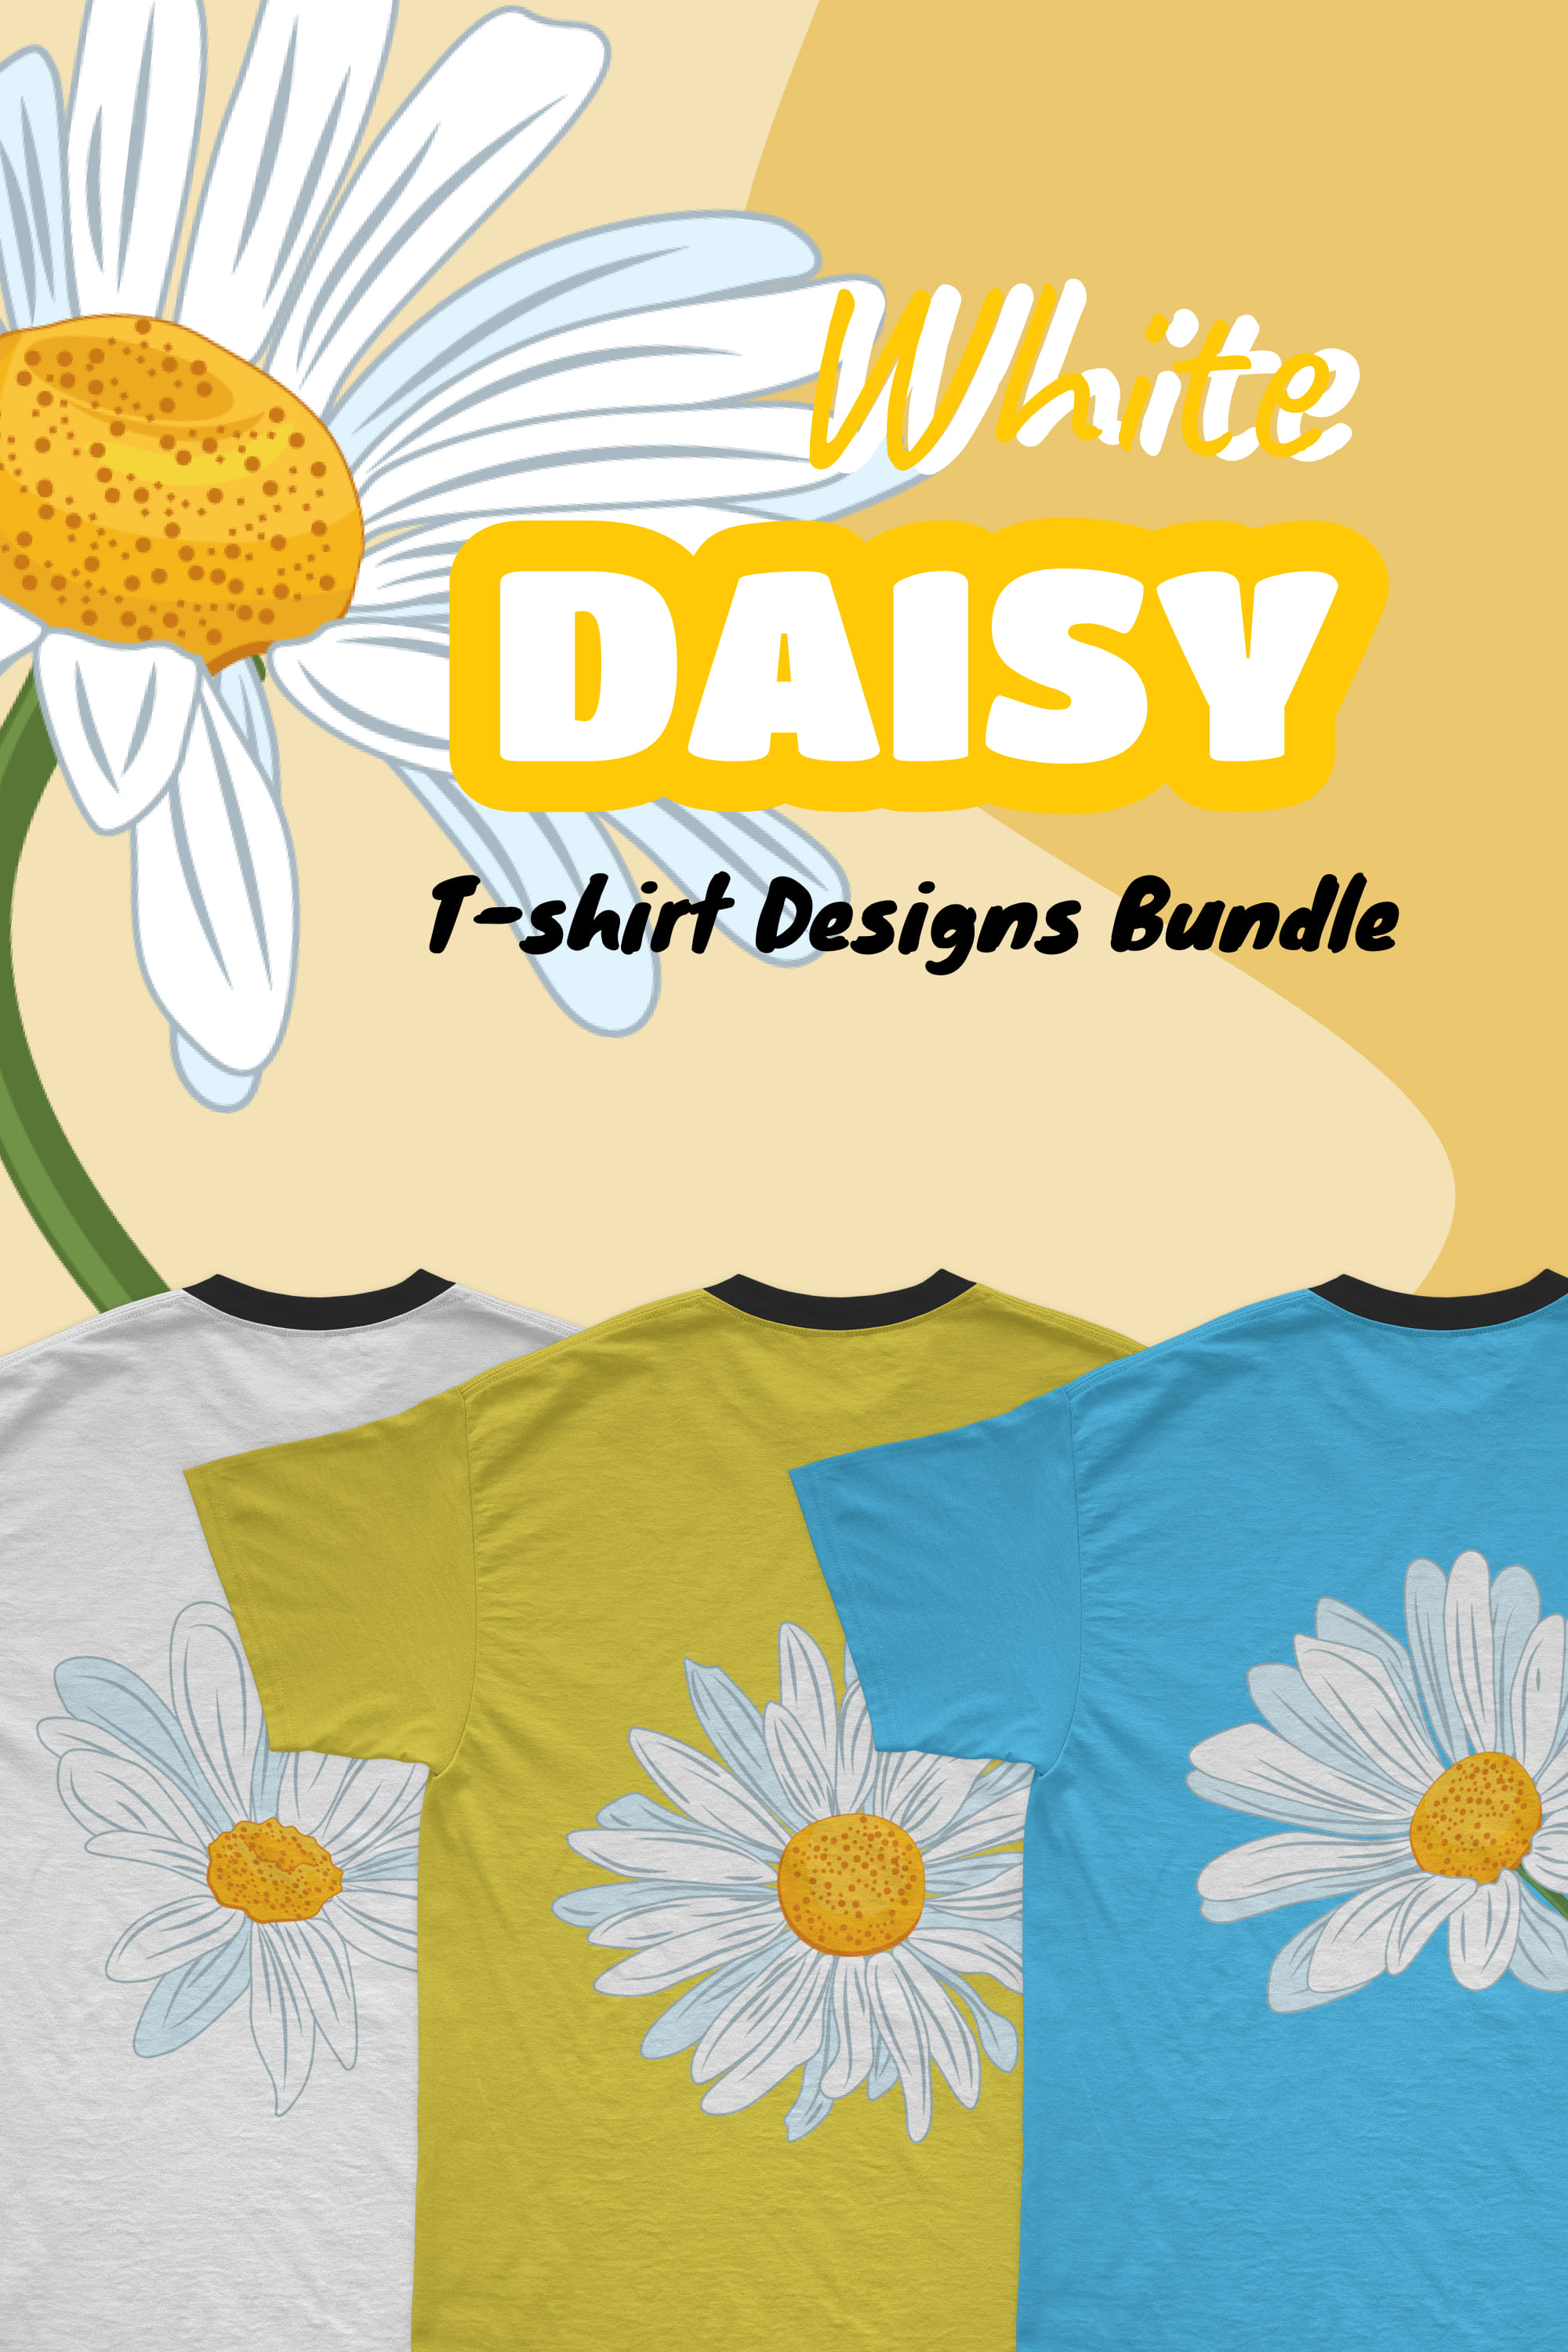 White Daisy T-shirt Designs Bundle - pinterest image preview.